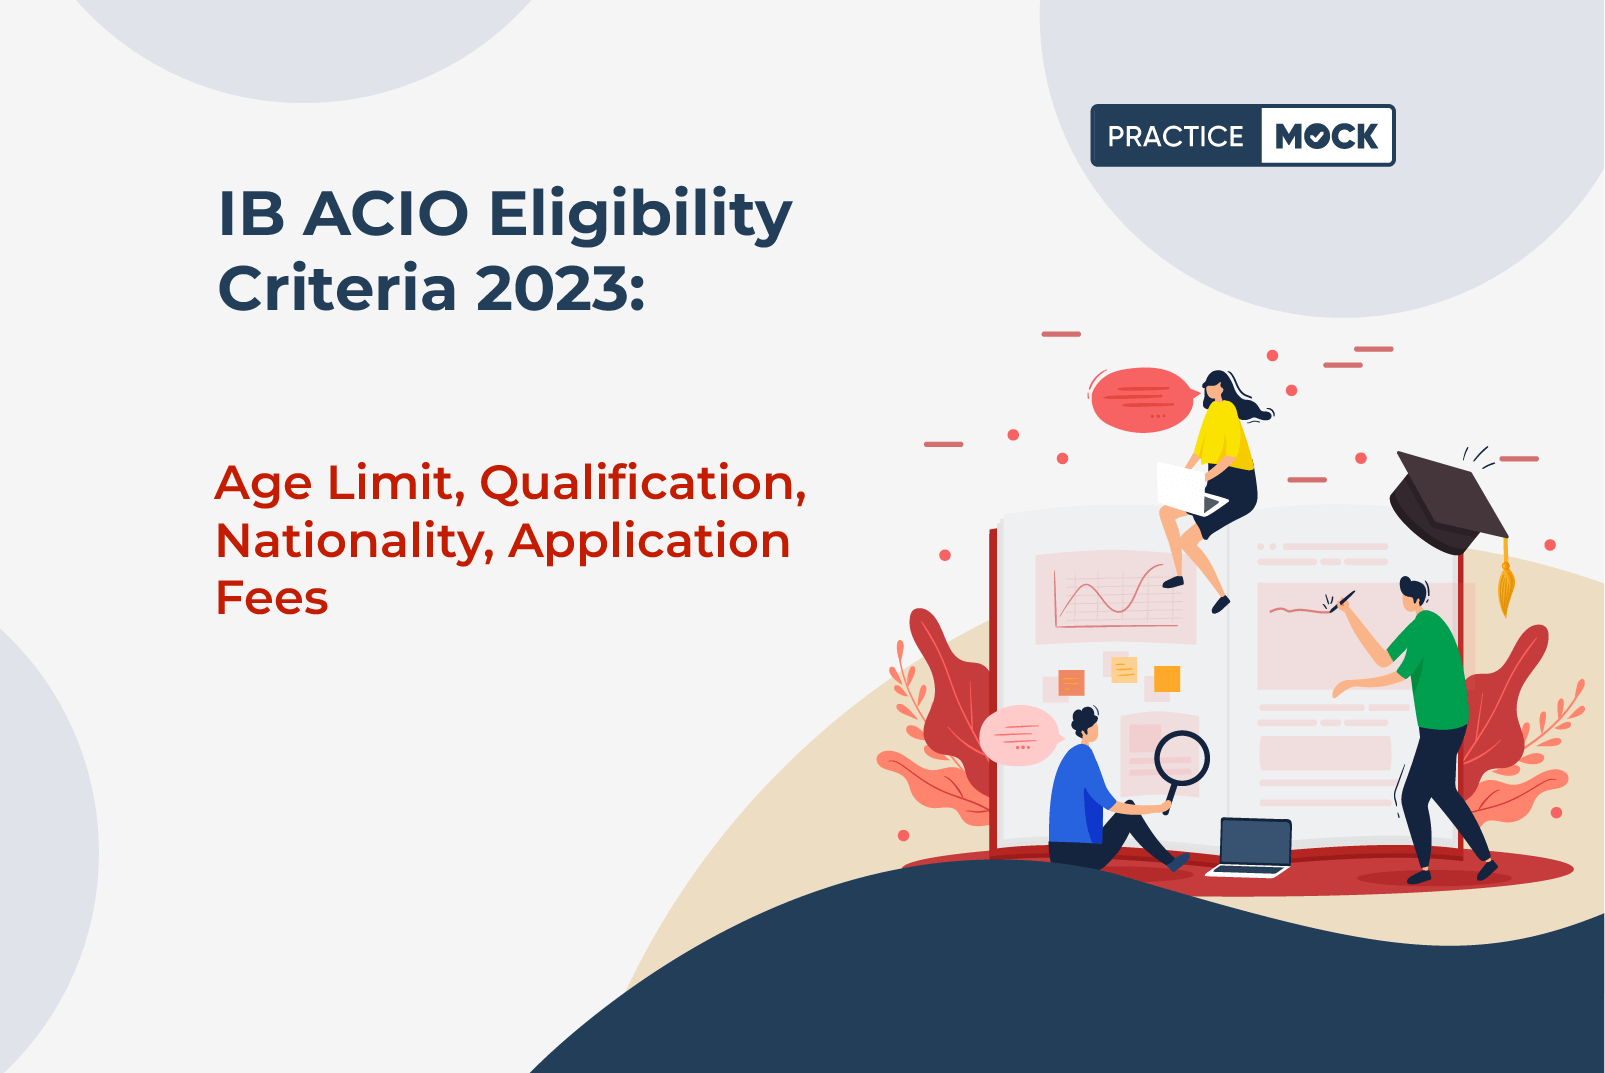 IB ACIO Eligibility Criteria 2023